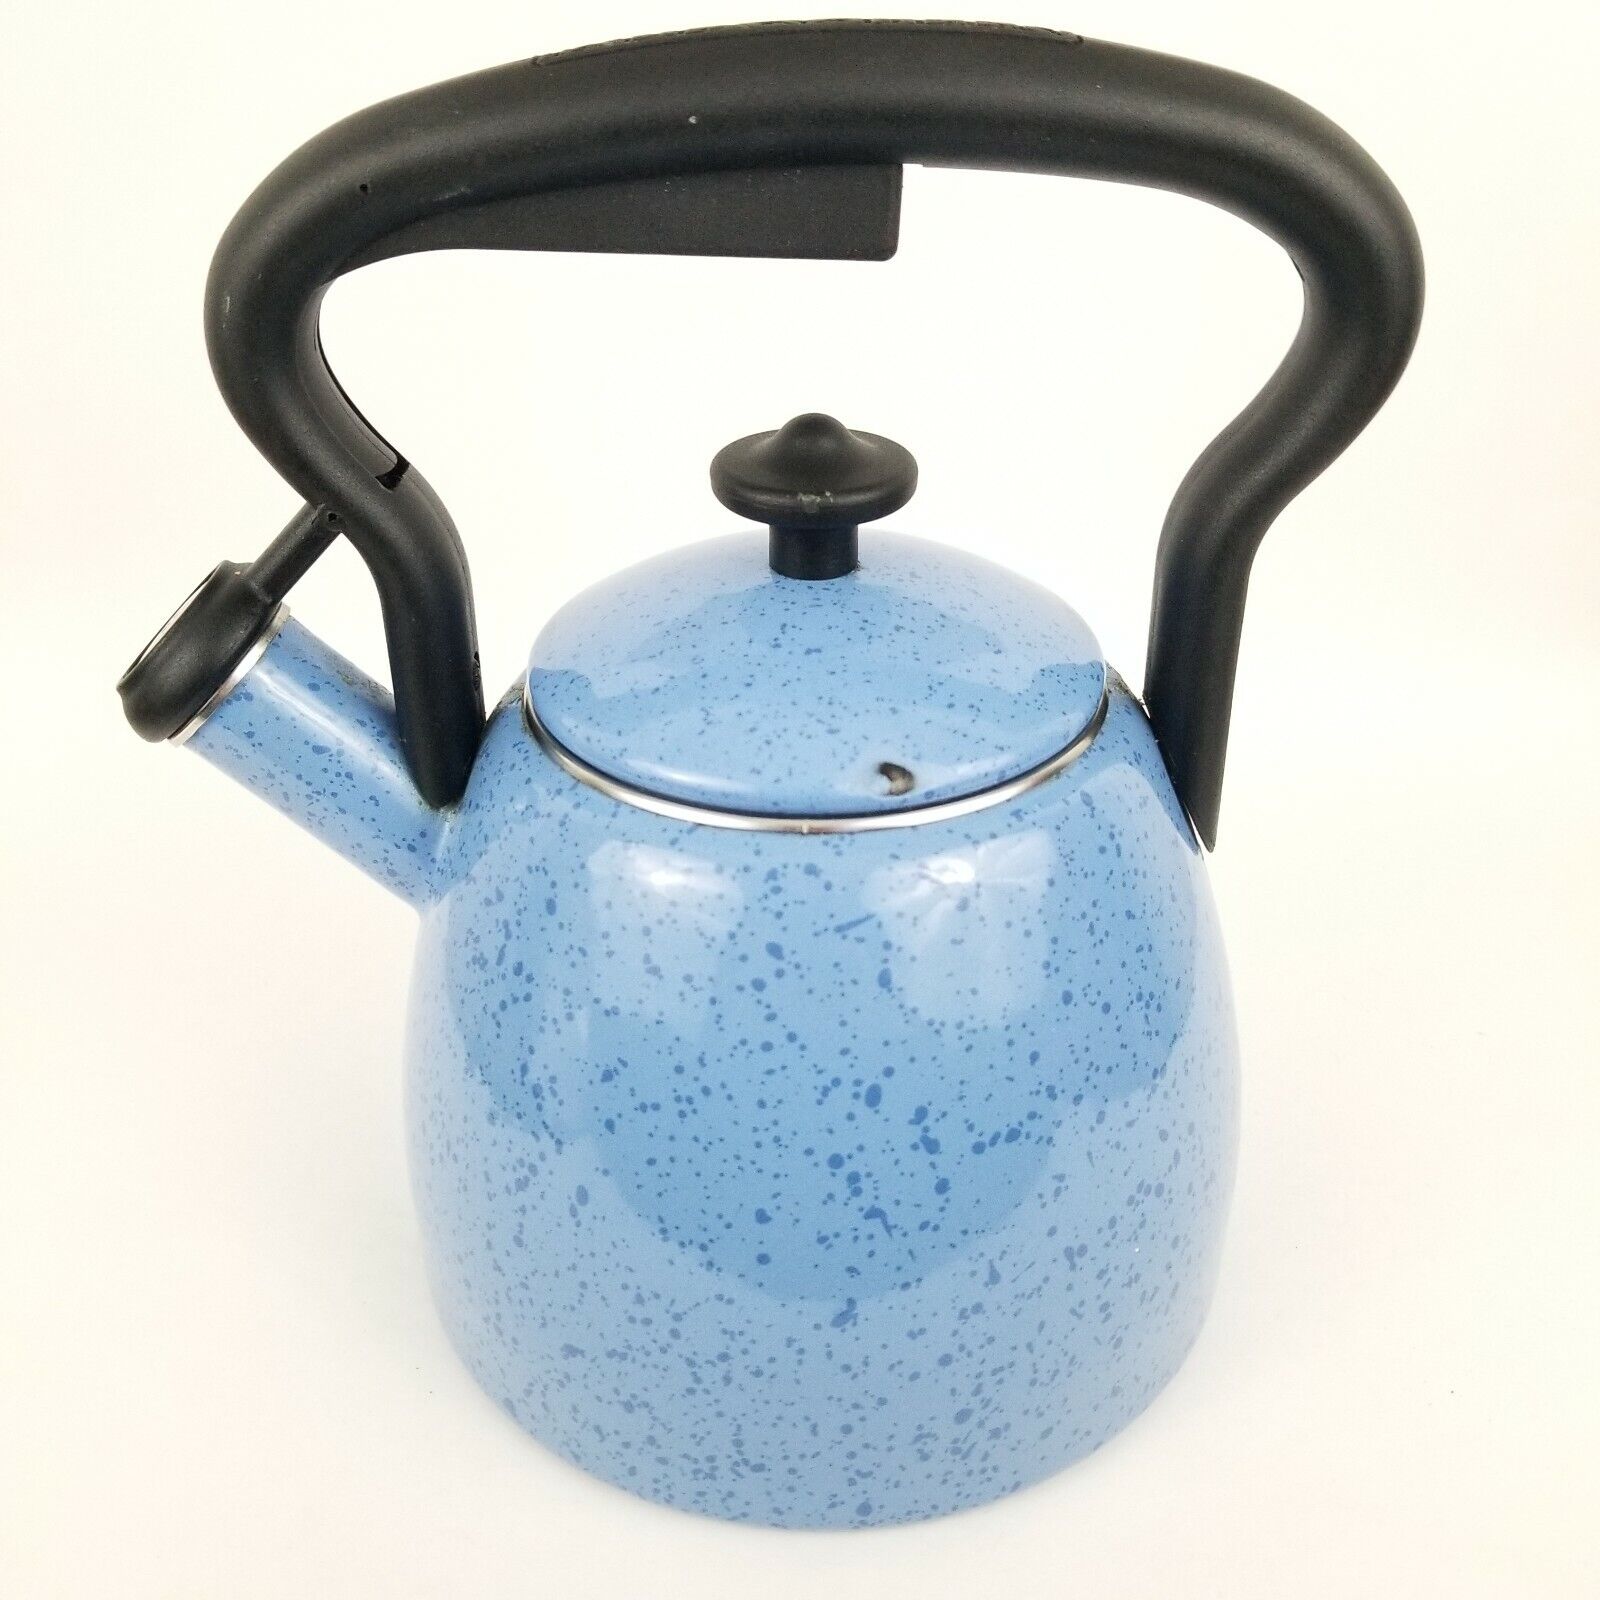 Paula Deen Collection Blue Speckled Enamel Stovetop Teapot 2 QT